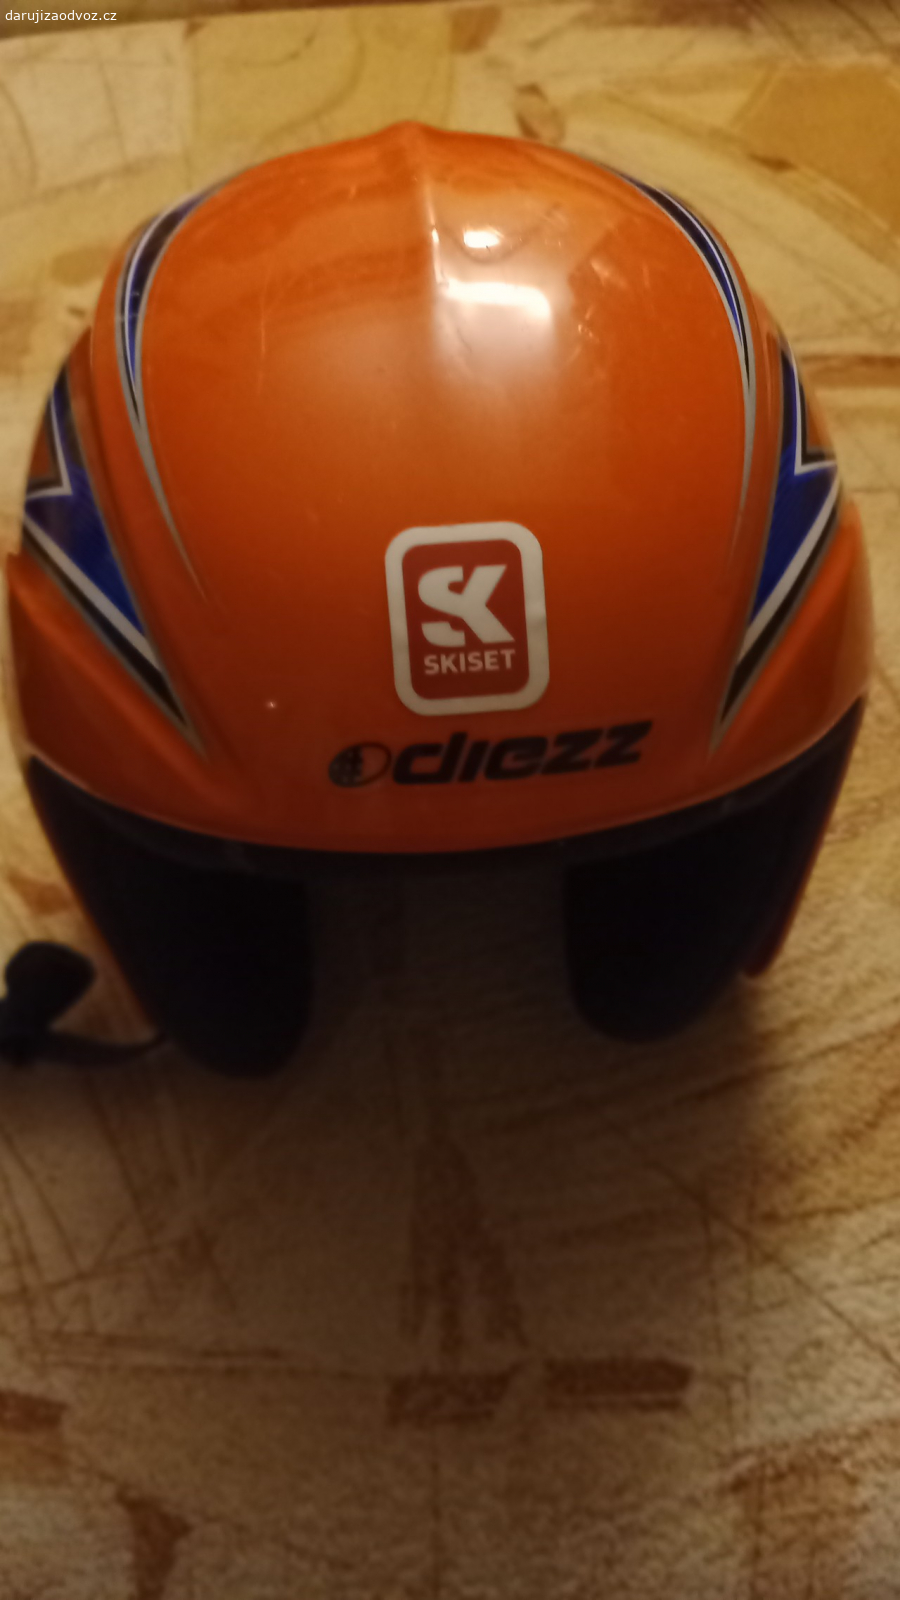 lyžařská helma. vel. xxxs (50cm), pro malou hlavu. Předání možné na trase Třebíč - Brno, nebo zašlu.